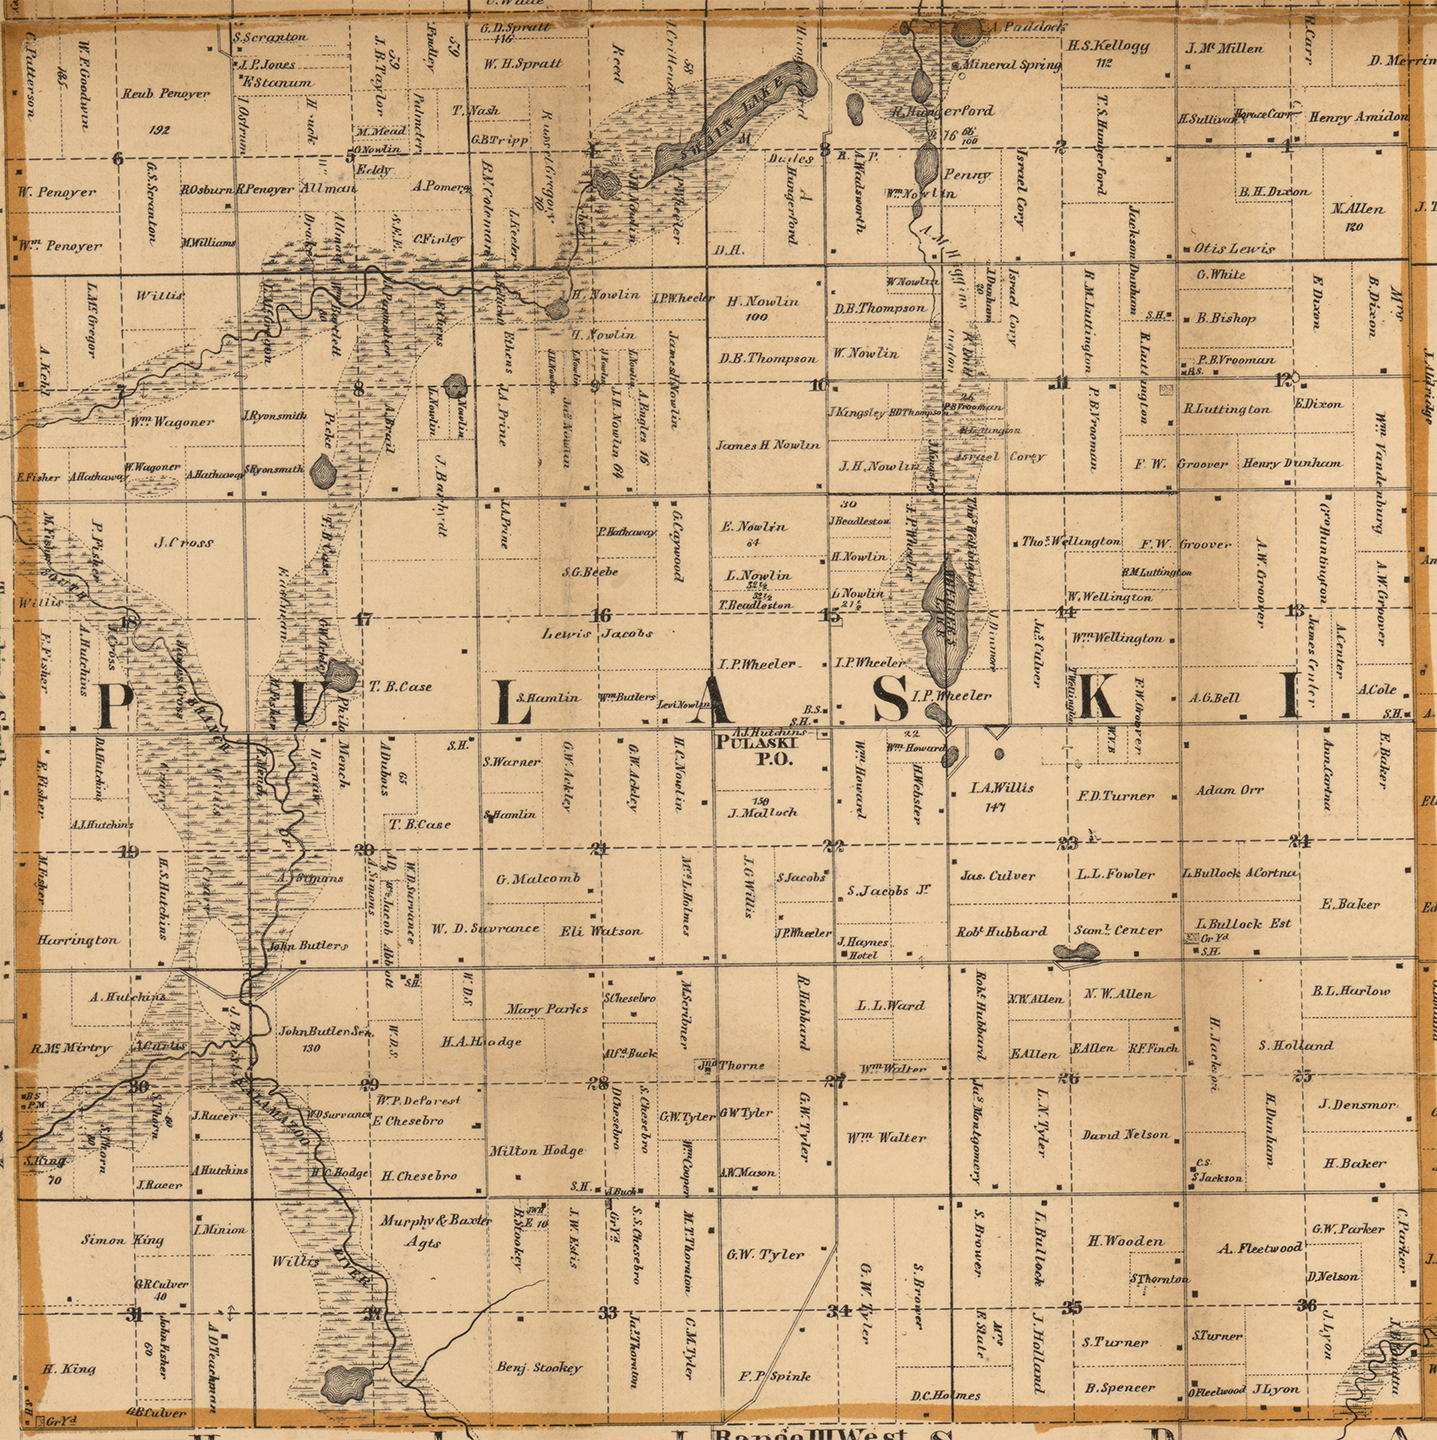 1858 Pulaski Township, Michigan landownership map